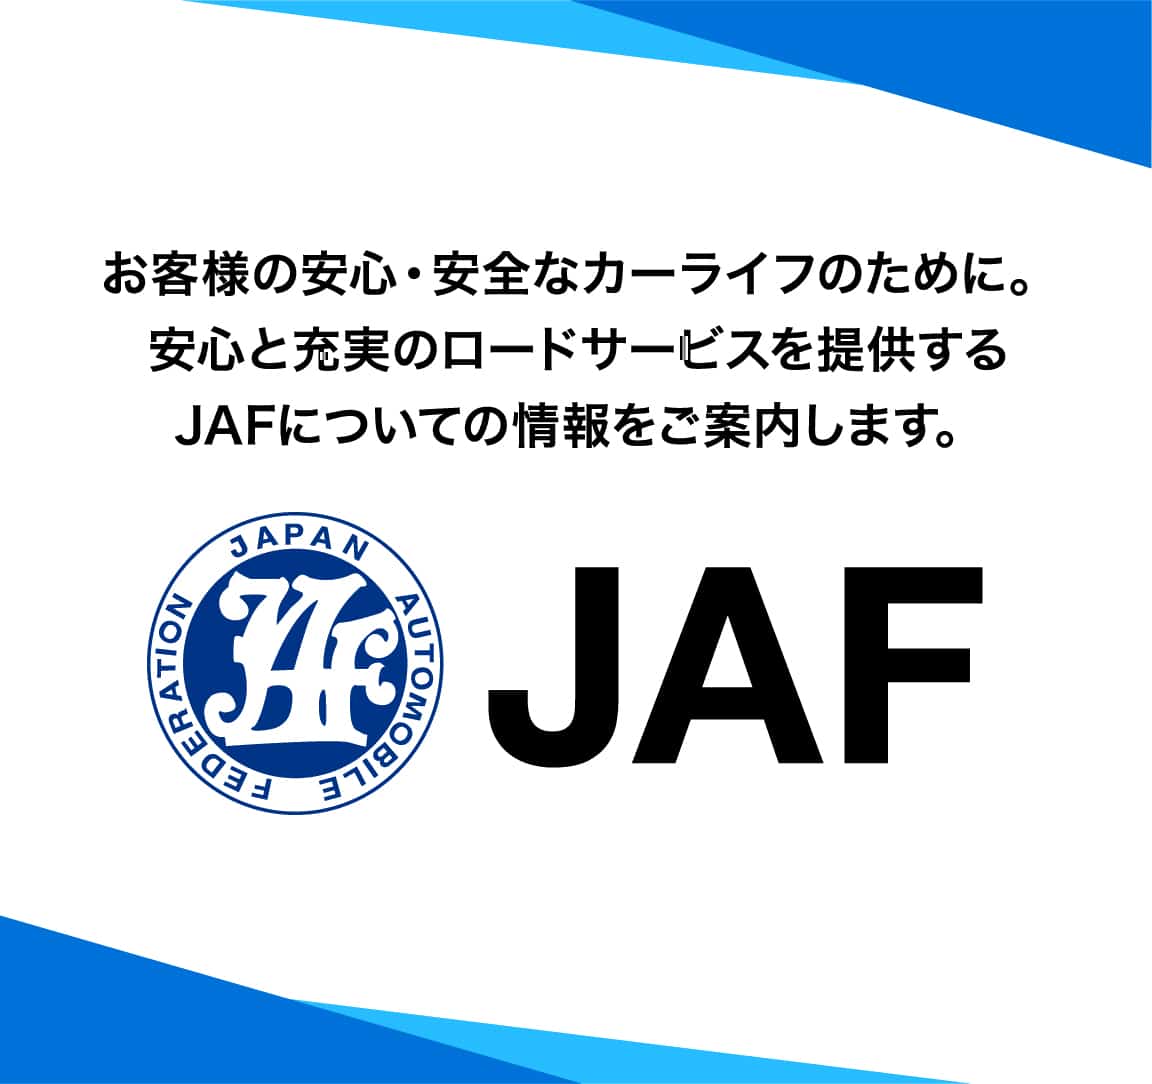 お客様の安心・安全なカーライフのために。安心と充実のロードサービスを提供するJAFについての情報をご案内します。JAF